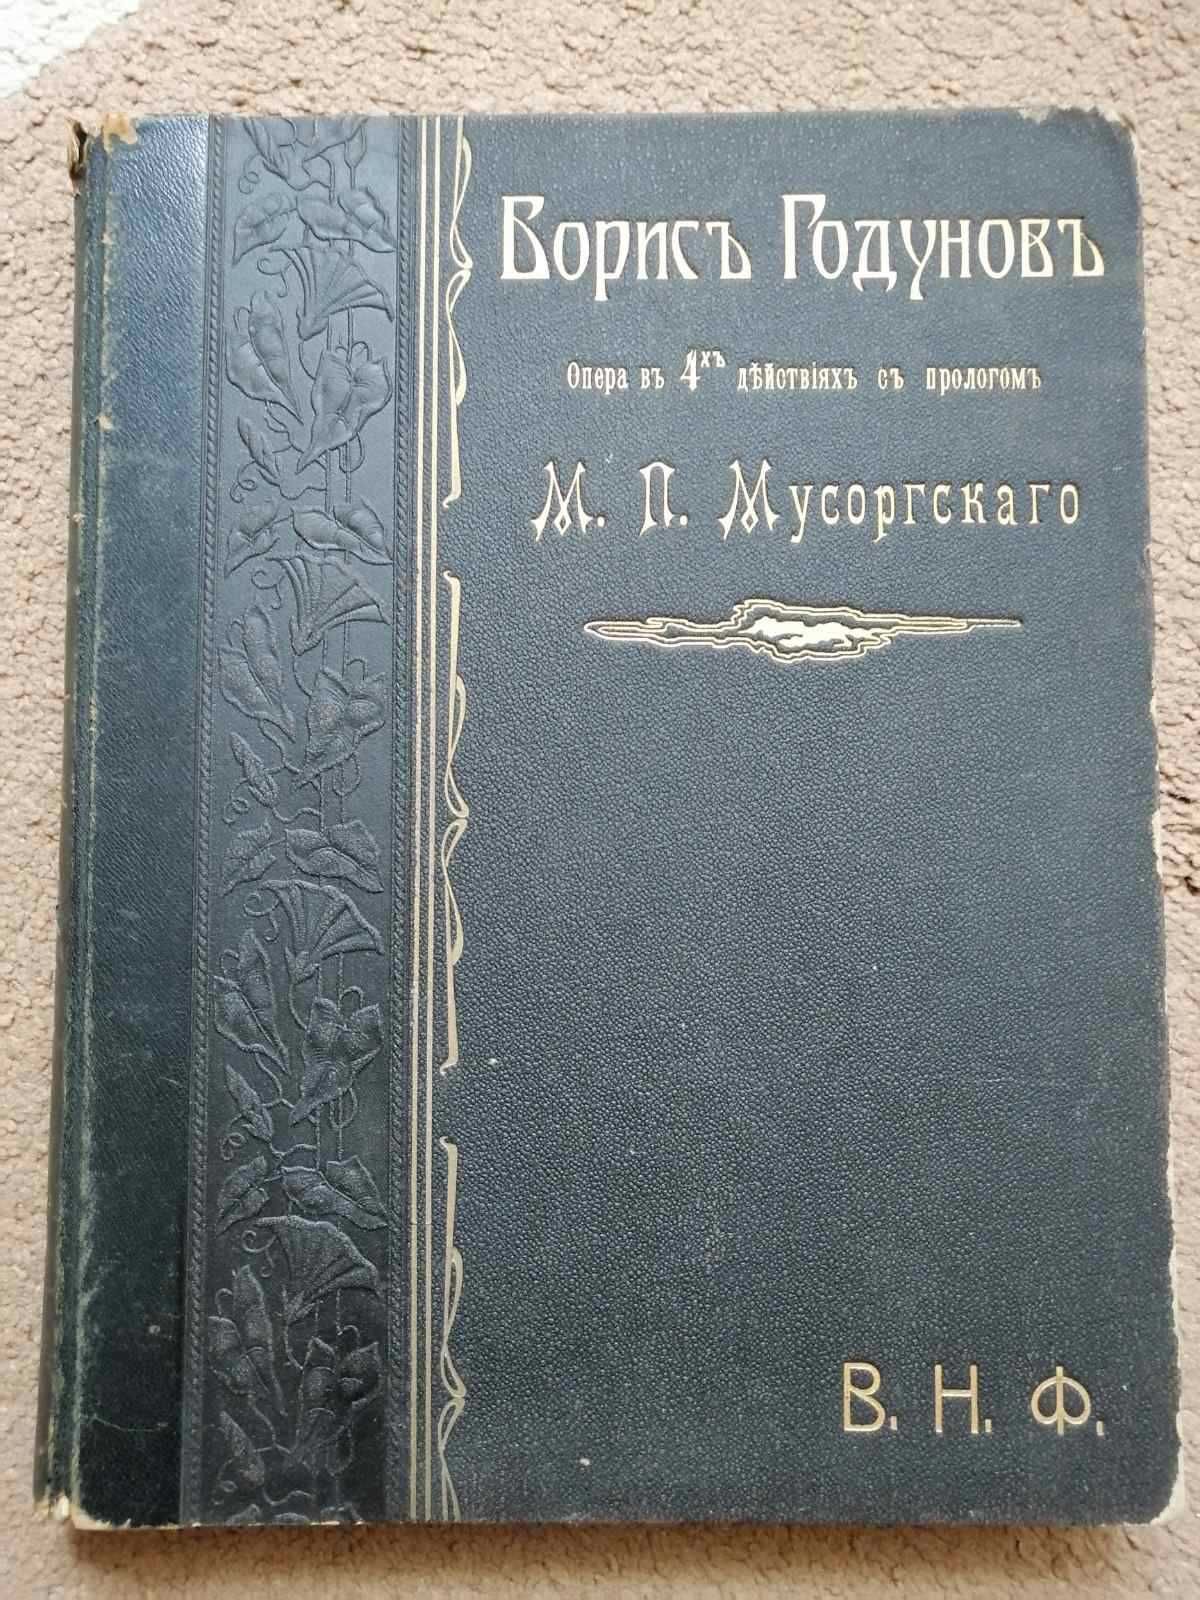 Партитура опери "Борис Годунов" (видання 1896 року)